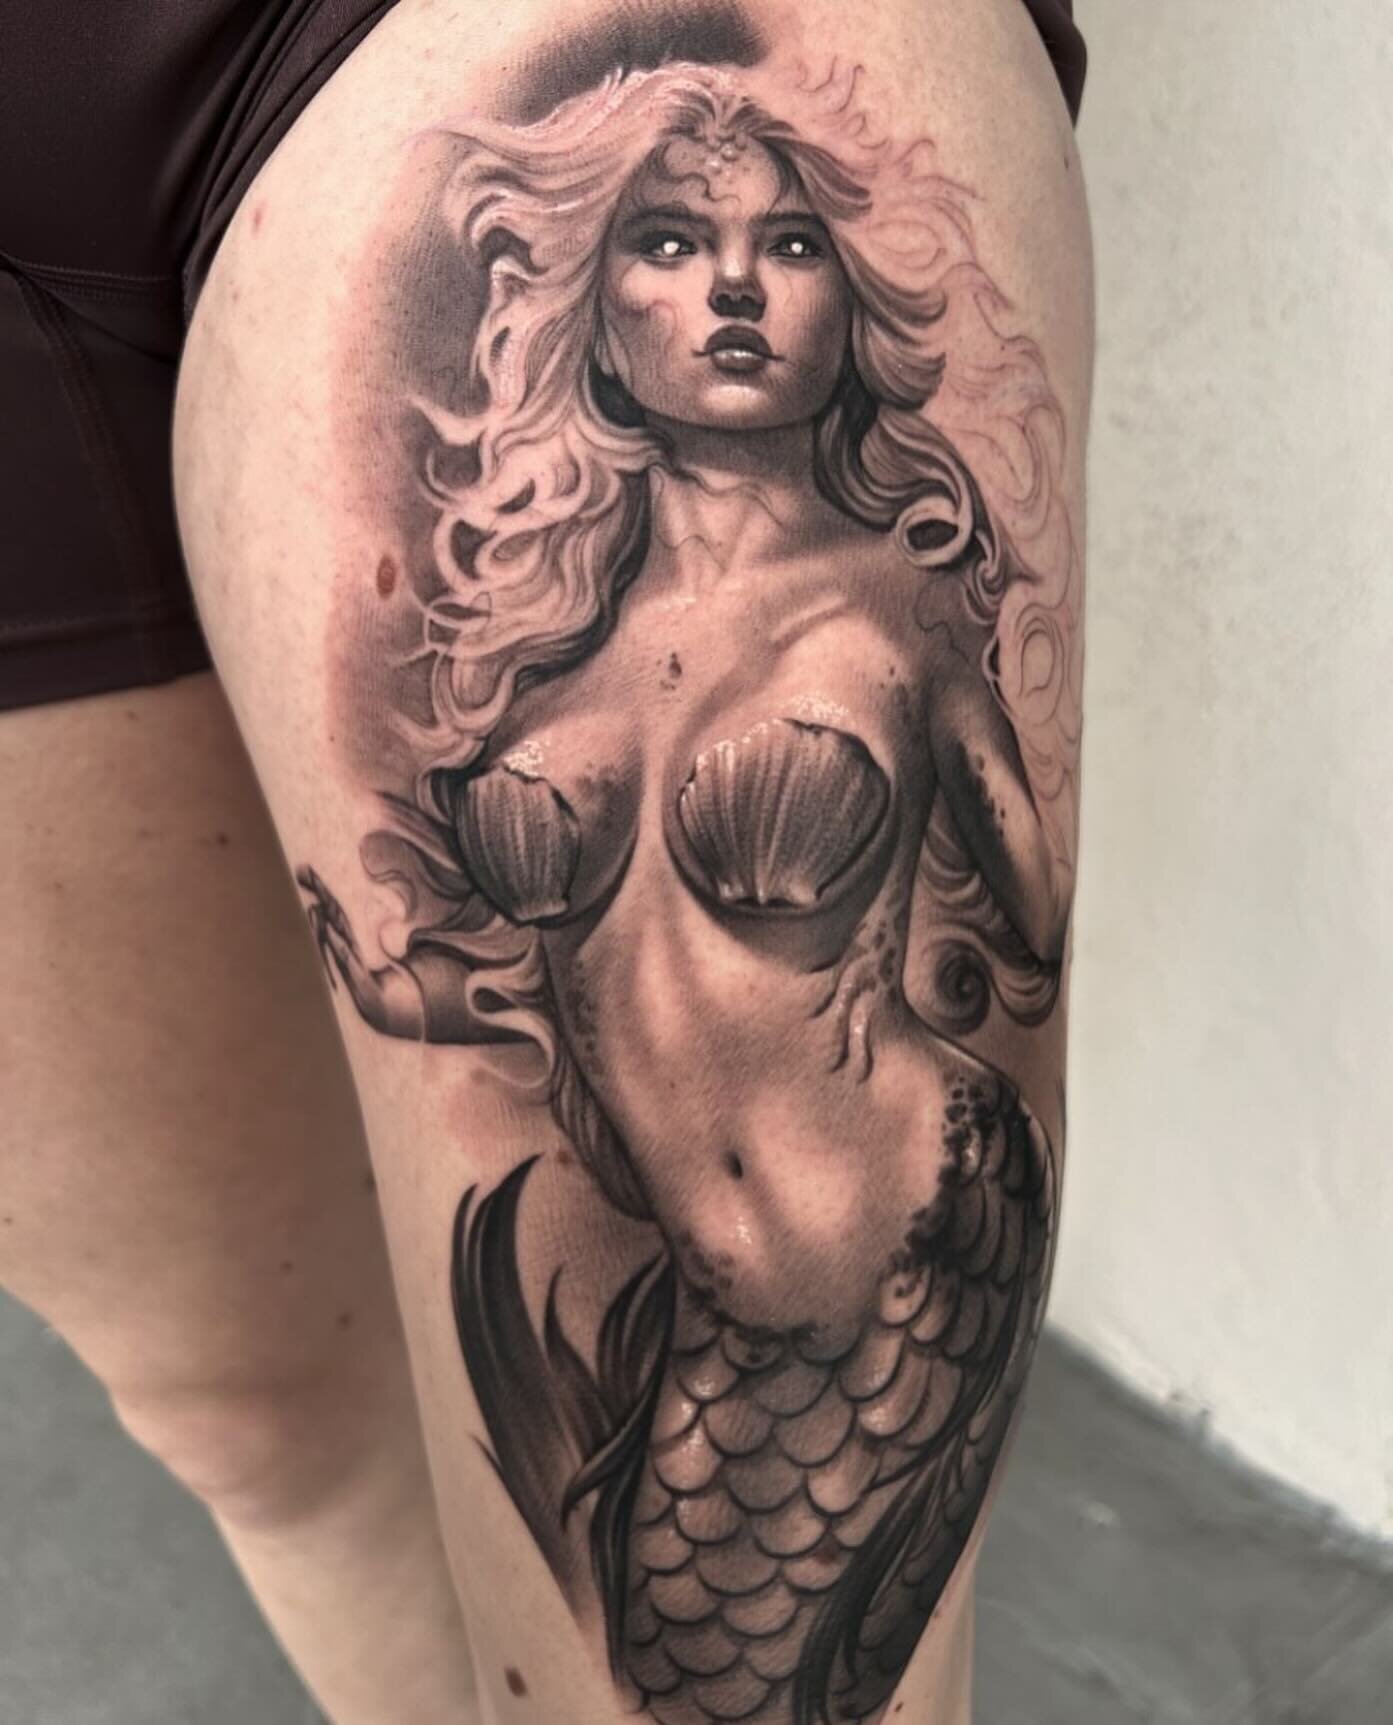 Done by @danielgilberttattoos 

#mermaid #mermaidtattoo #tattooartist #blackandgreytattoo #tattooshop